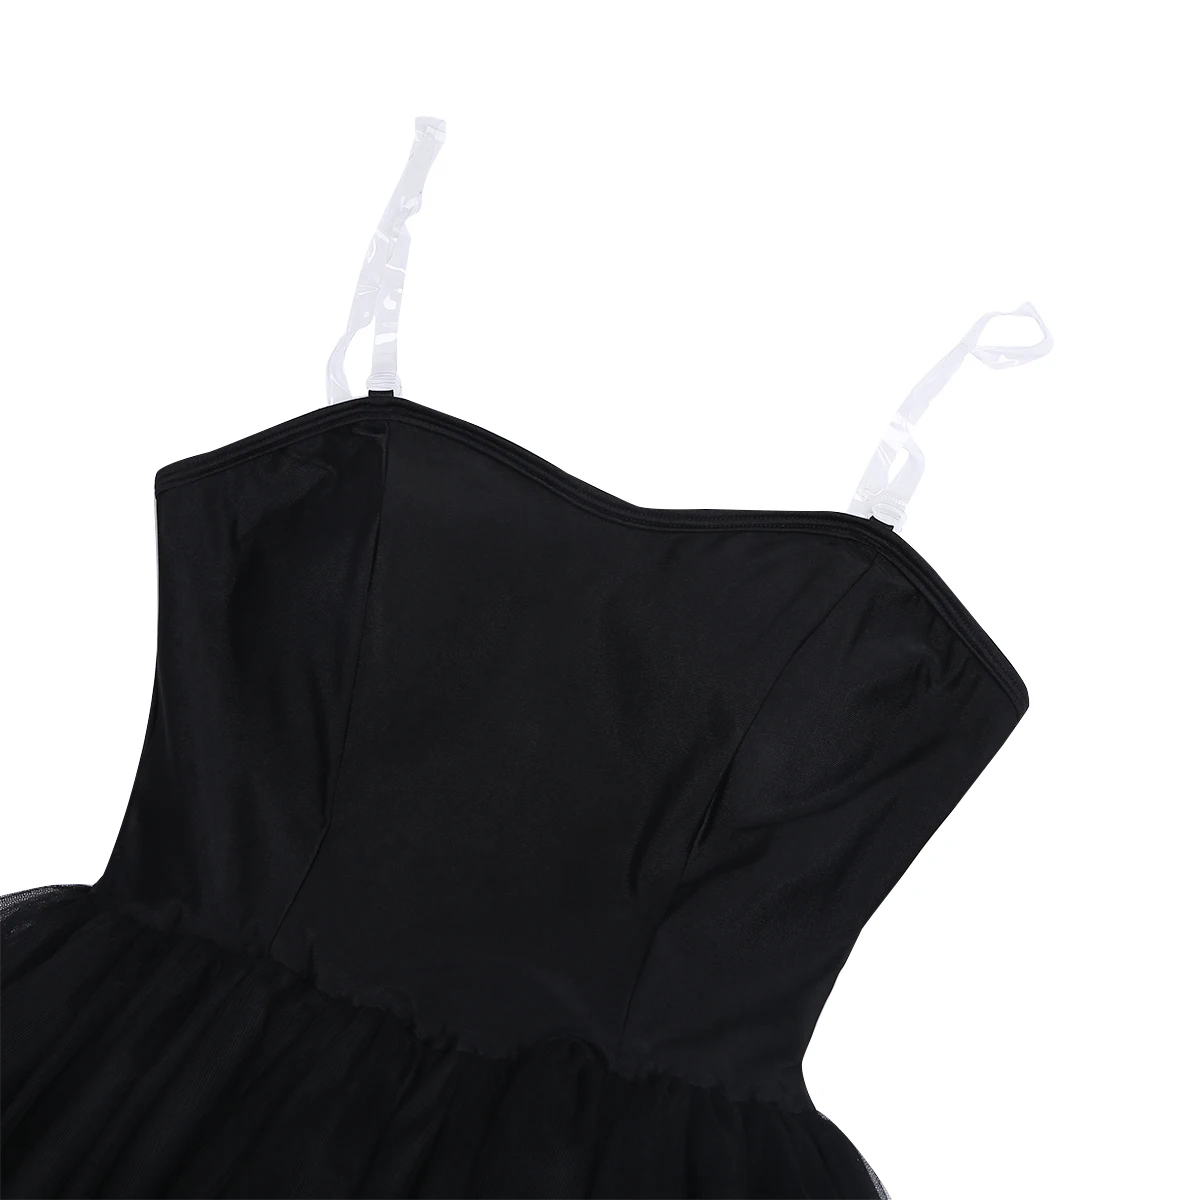 ChicTry Для женщин профессиональной балетное платье-пачка черный костюм лебедя Встроенный бюстгальтер балетное трико для взрослых этап одежда для танцевальных выступлений